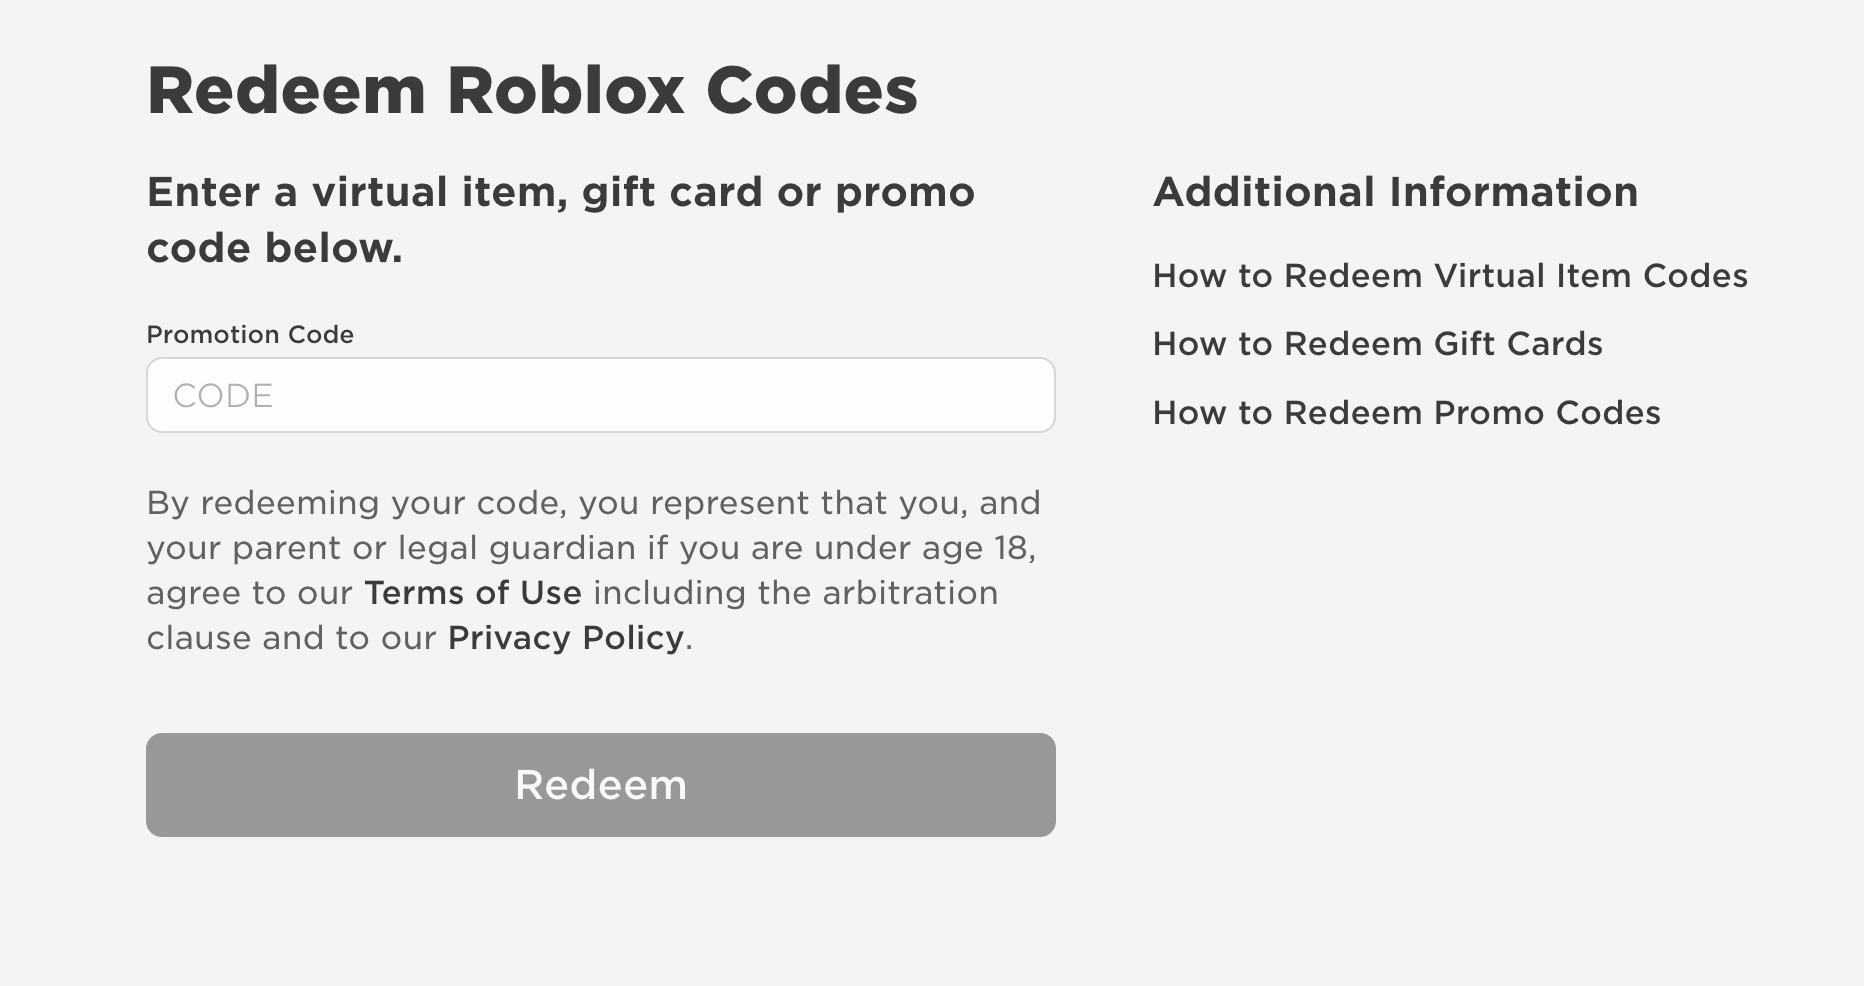 Roblox promocodes. Redeem Roblox codes. Roblox Promo codes redeem. Roblox.com/redeem. Код роблокс промокод